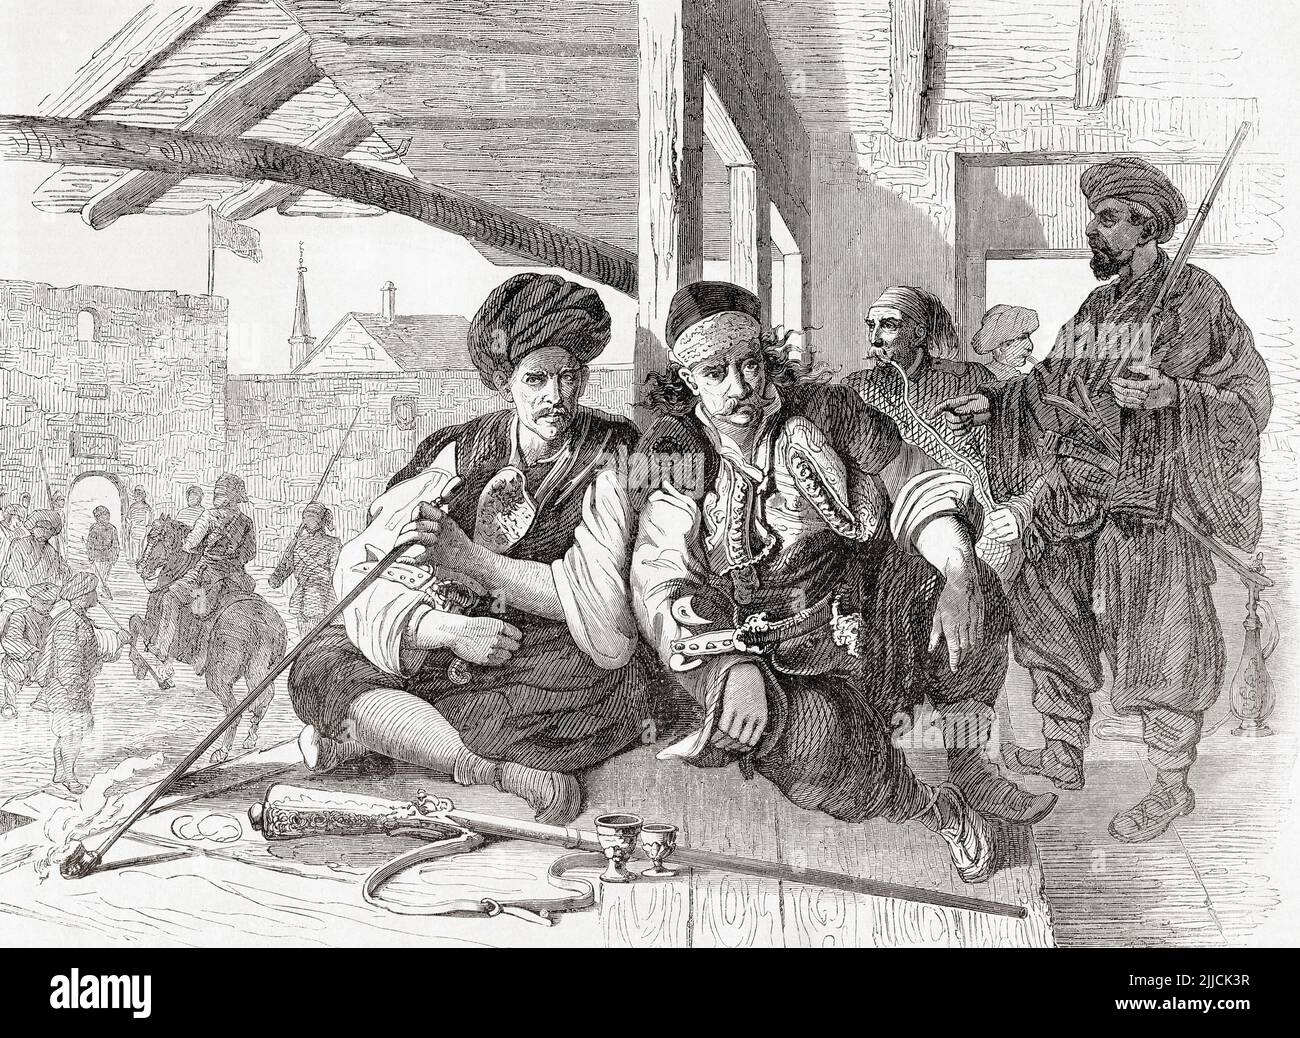 Bashi-bazouks al caffè. Un bashi-bazouk o bachibouzouk (dal turco başıbozuk, letteralmente "testa deformata") era un cavallerista mercenario dell'esercito dell'Impero Ottomano, con armamenti non standardizzati. Avevano una reputazione per il coraggio, ma anche come gruppo indisciplinato e brutale. Da l'Univers Illustre, pubblicato Parigi, 1859 Foto Stock